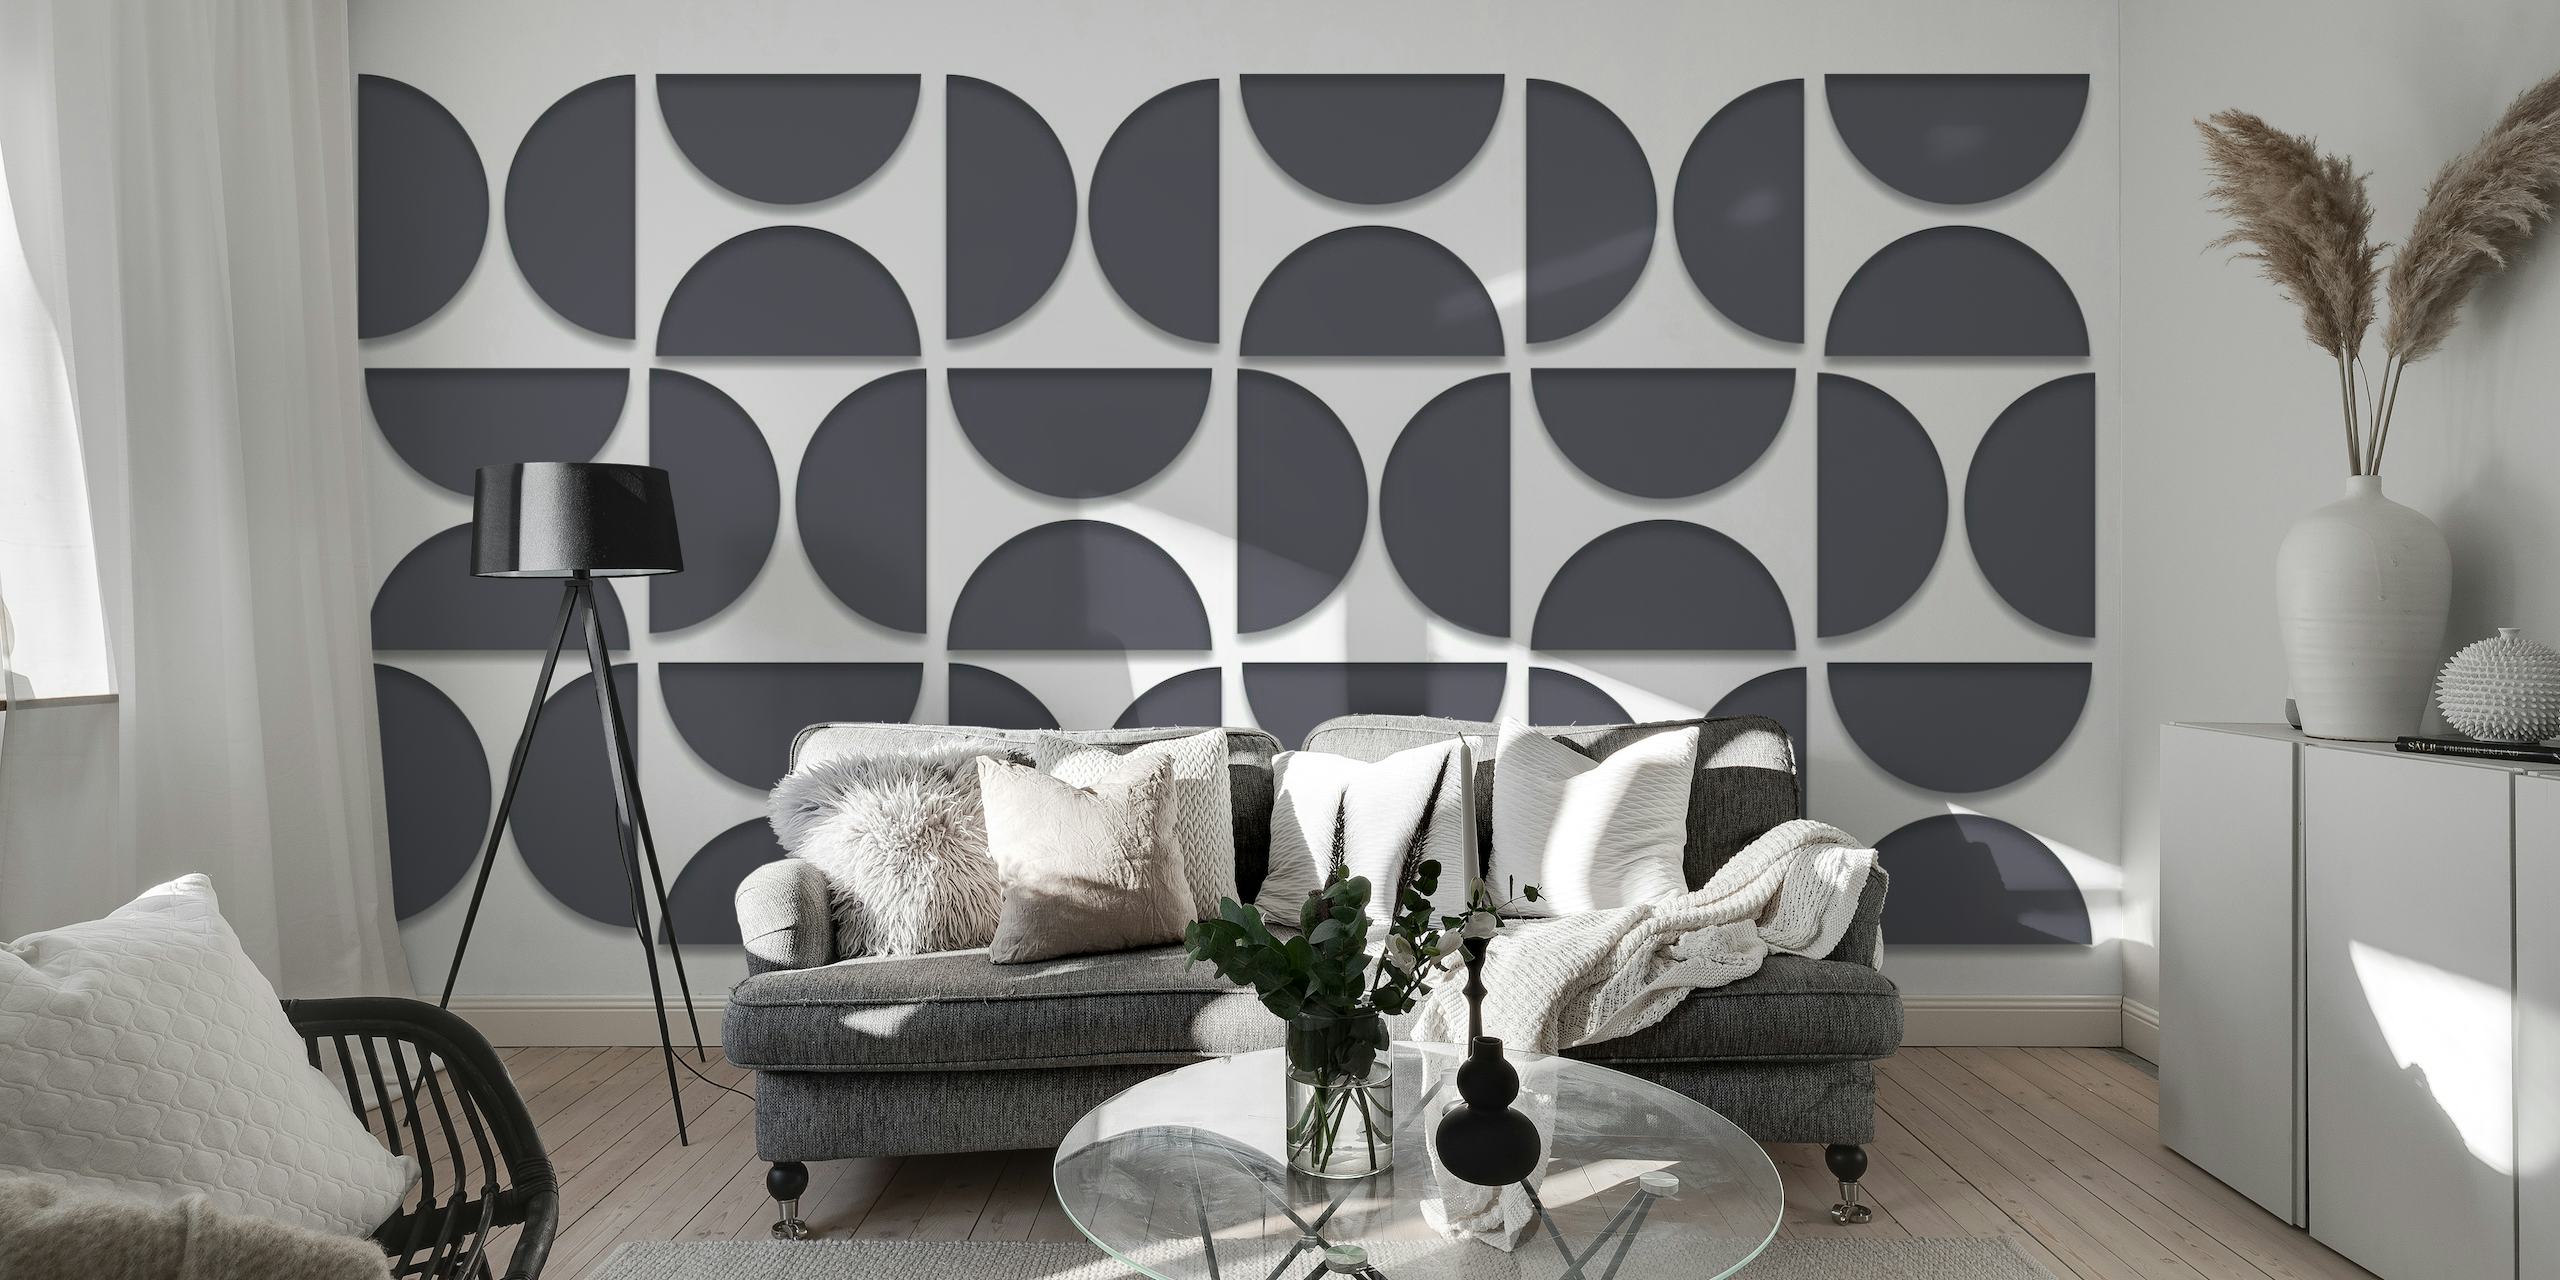 Ilusão 3D mural geométrico inspirado na Bauhaus em preto e branco